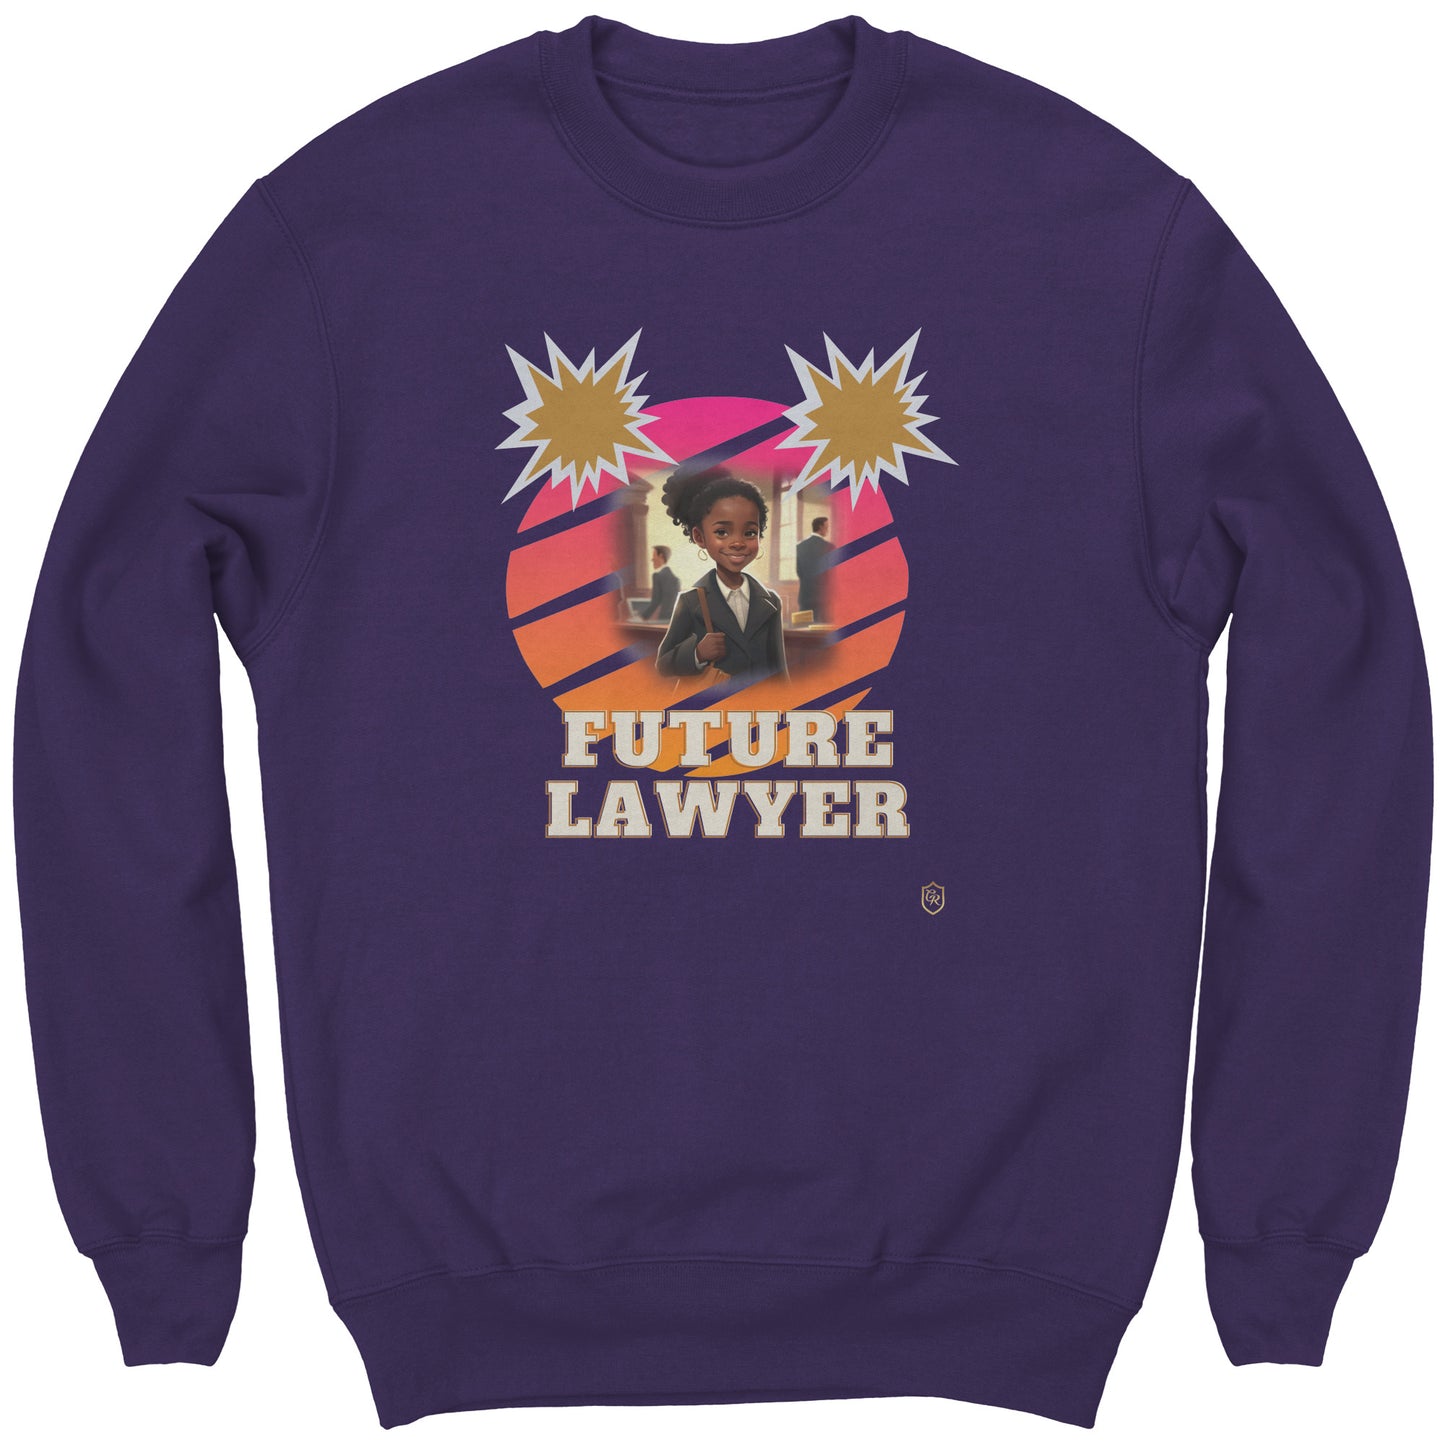 Young Girl's Future Lawyer Sweatshirt